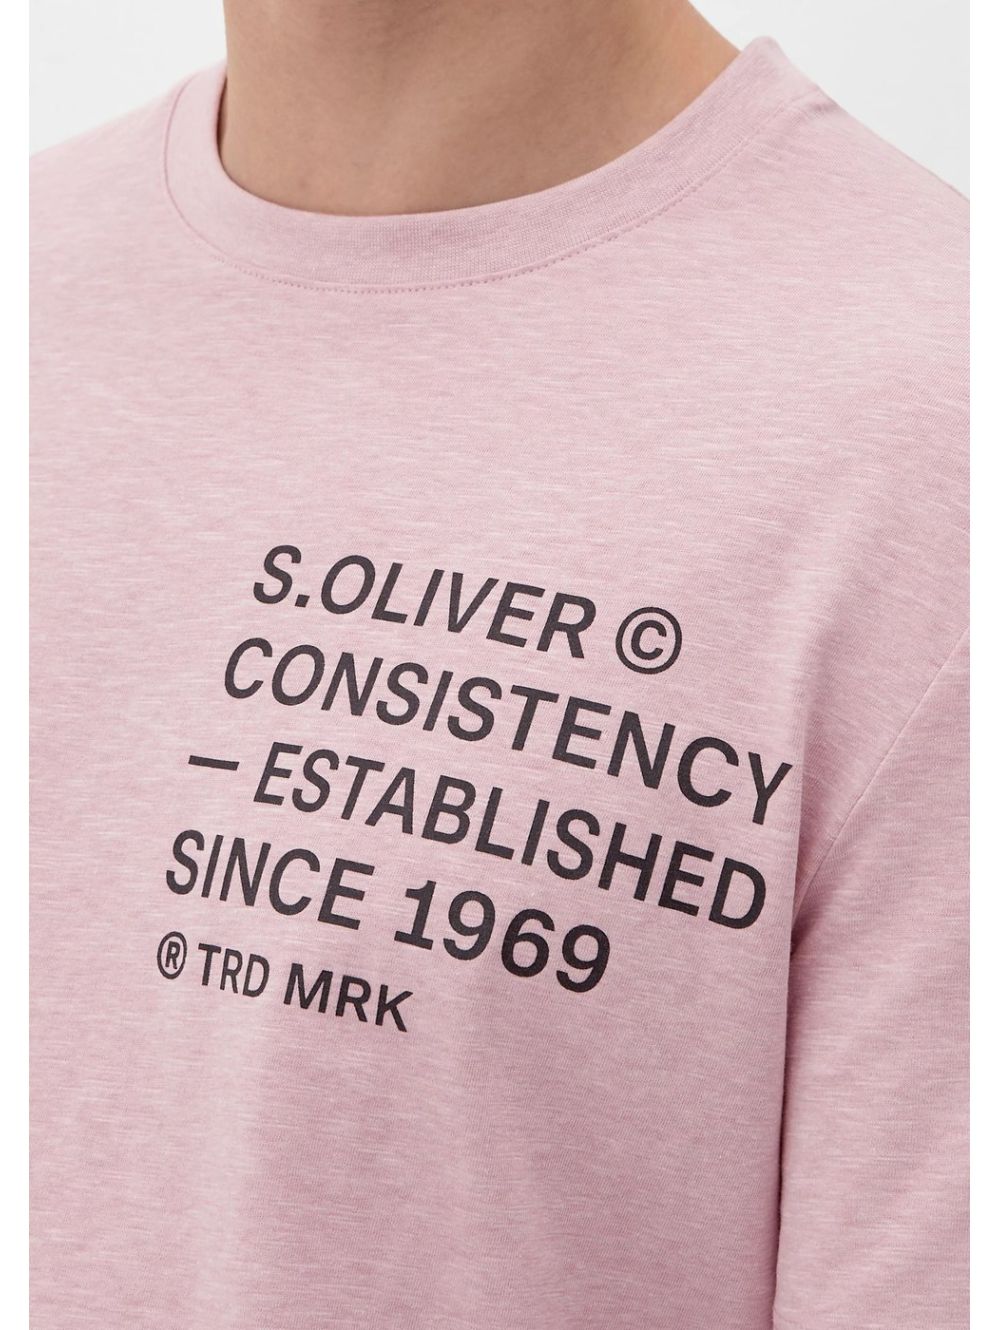 S.OLIVER Men\'s T-Shirt short-sleeved 2129852.41W2 pink Rose